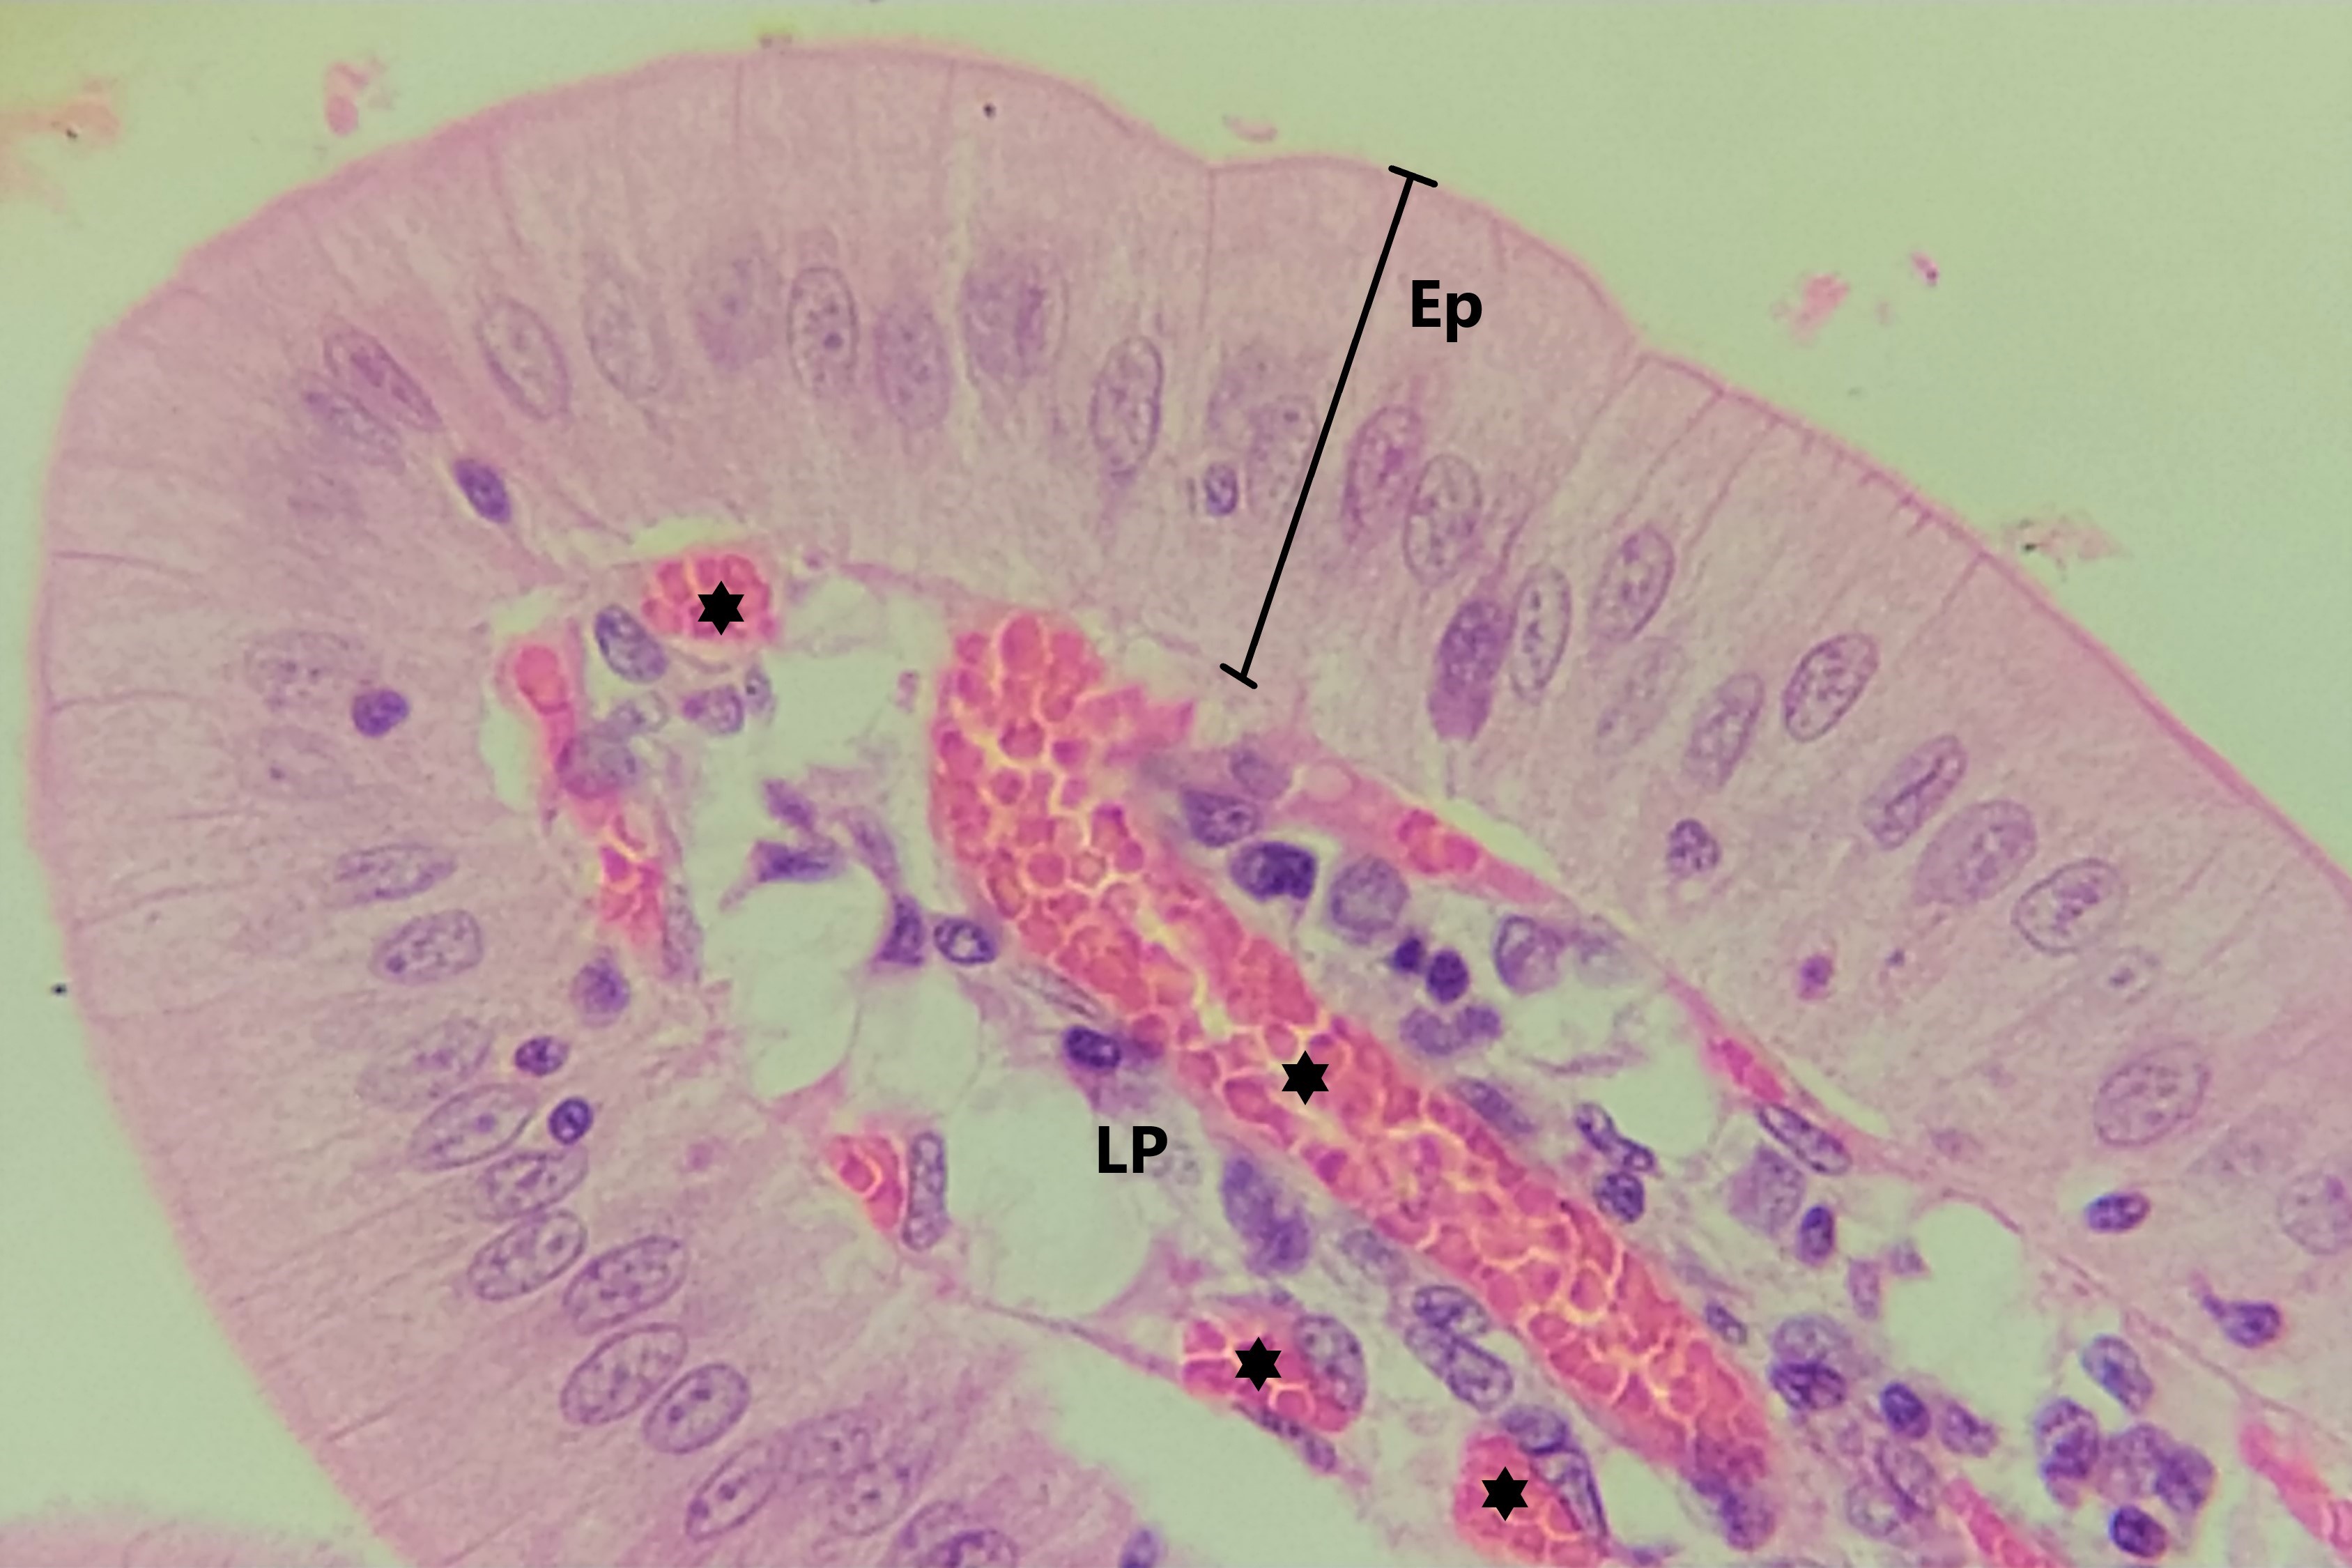 Lâmina: Intestino delgado - duodeno (H&E - Aumento: 400x). A fotomicrografia mostra a extremidade de uma vilosidade intestinal cuja superfície é revestida por um epitélio simples colunar (Ep).   Na região central dessa vilosidade é possível observar um tecido conjuntivo frouxo conhecido como lâmina própria (LP), com vasos sanguíneos (asteriscos), formando o cerne dessa vilosidade.